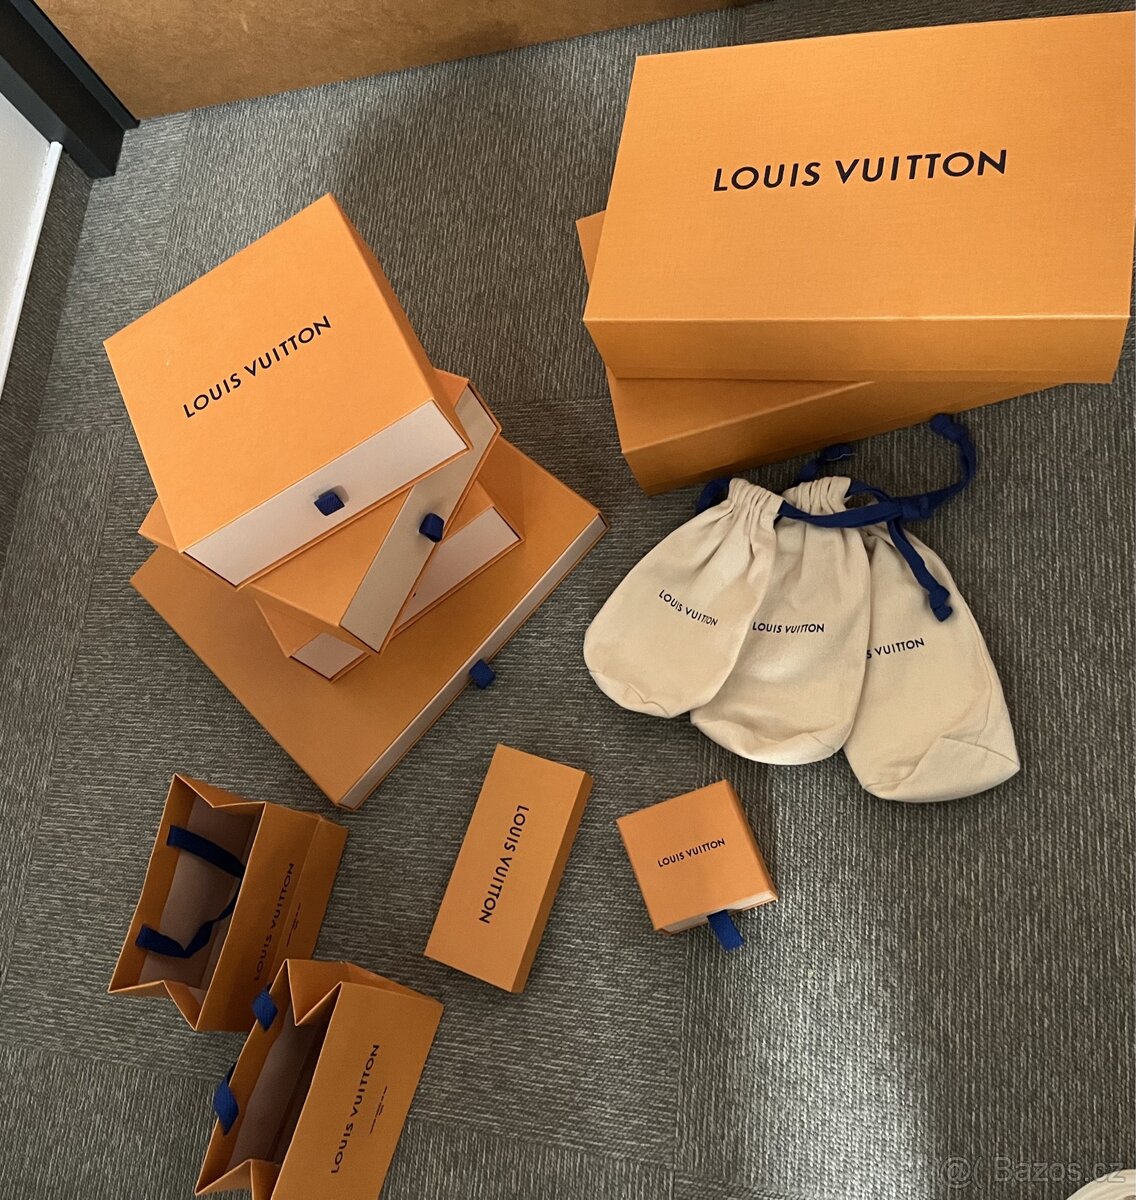 Louis Vuitton krabice a tašky MALÉ